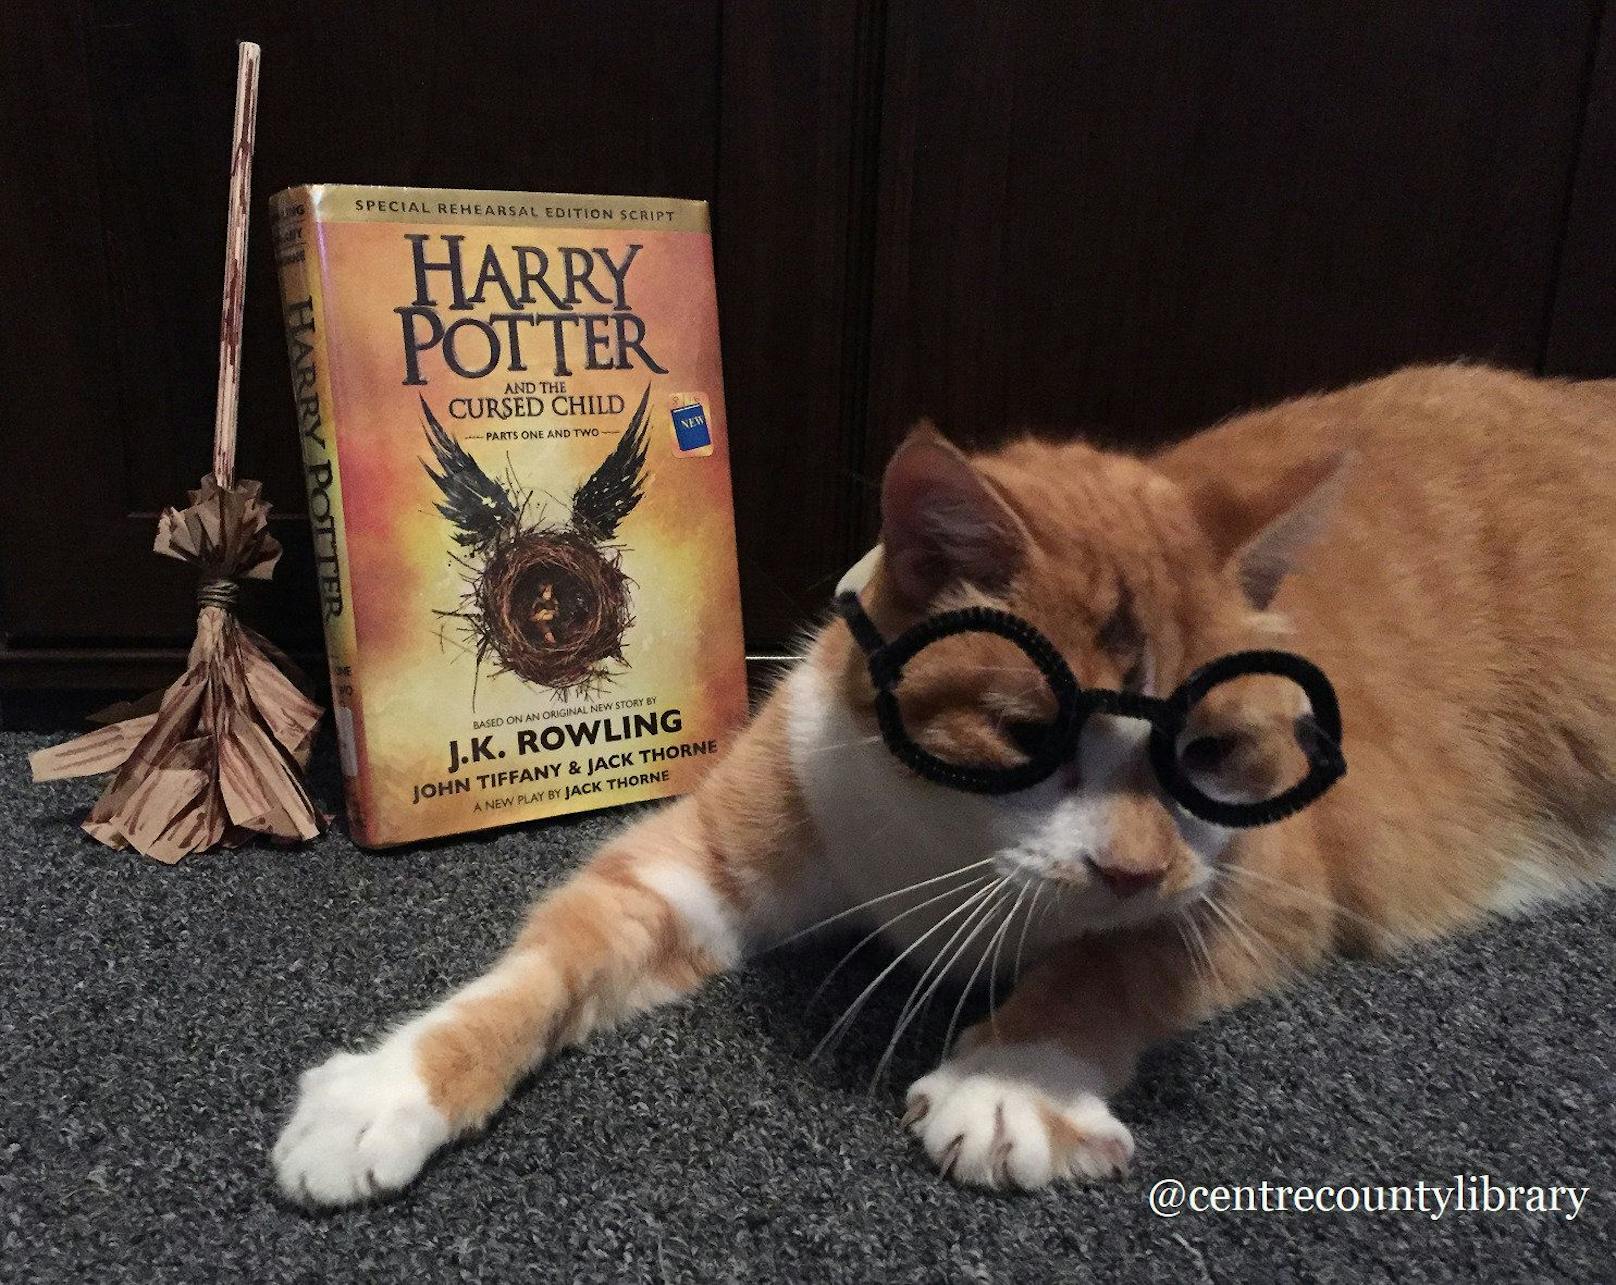 Als Harry Potter macht Horatio einen sehr glaubwürdigen Eindruck, oder? 